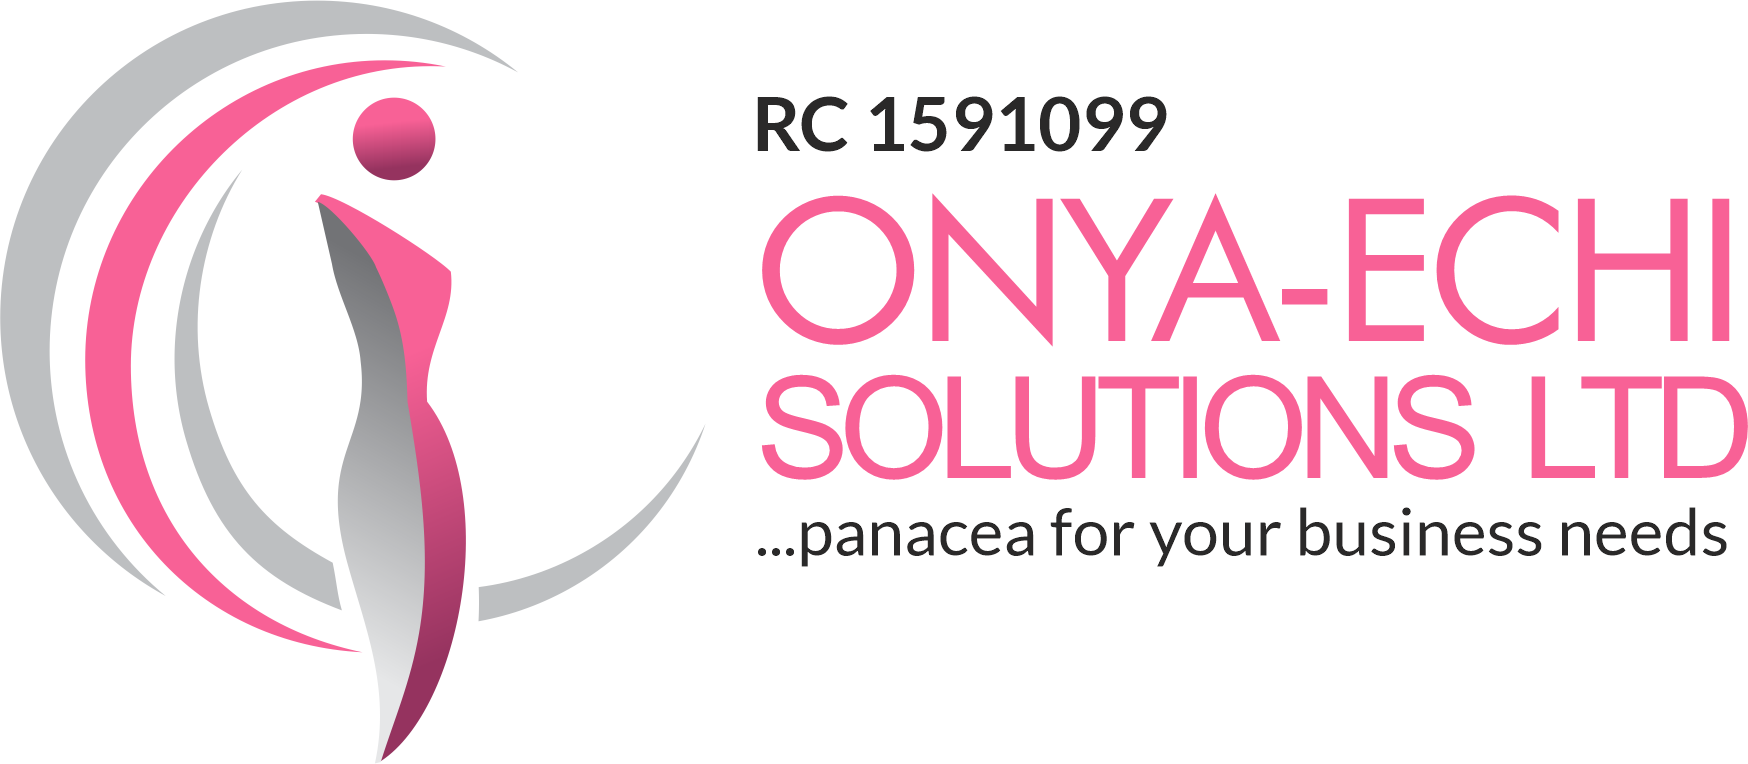 Onya-Echi Solutions